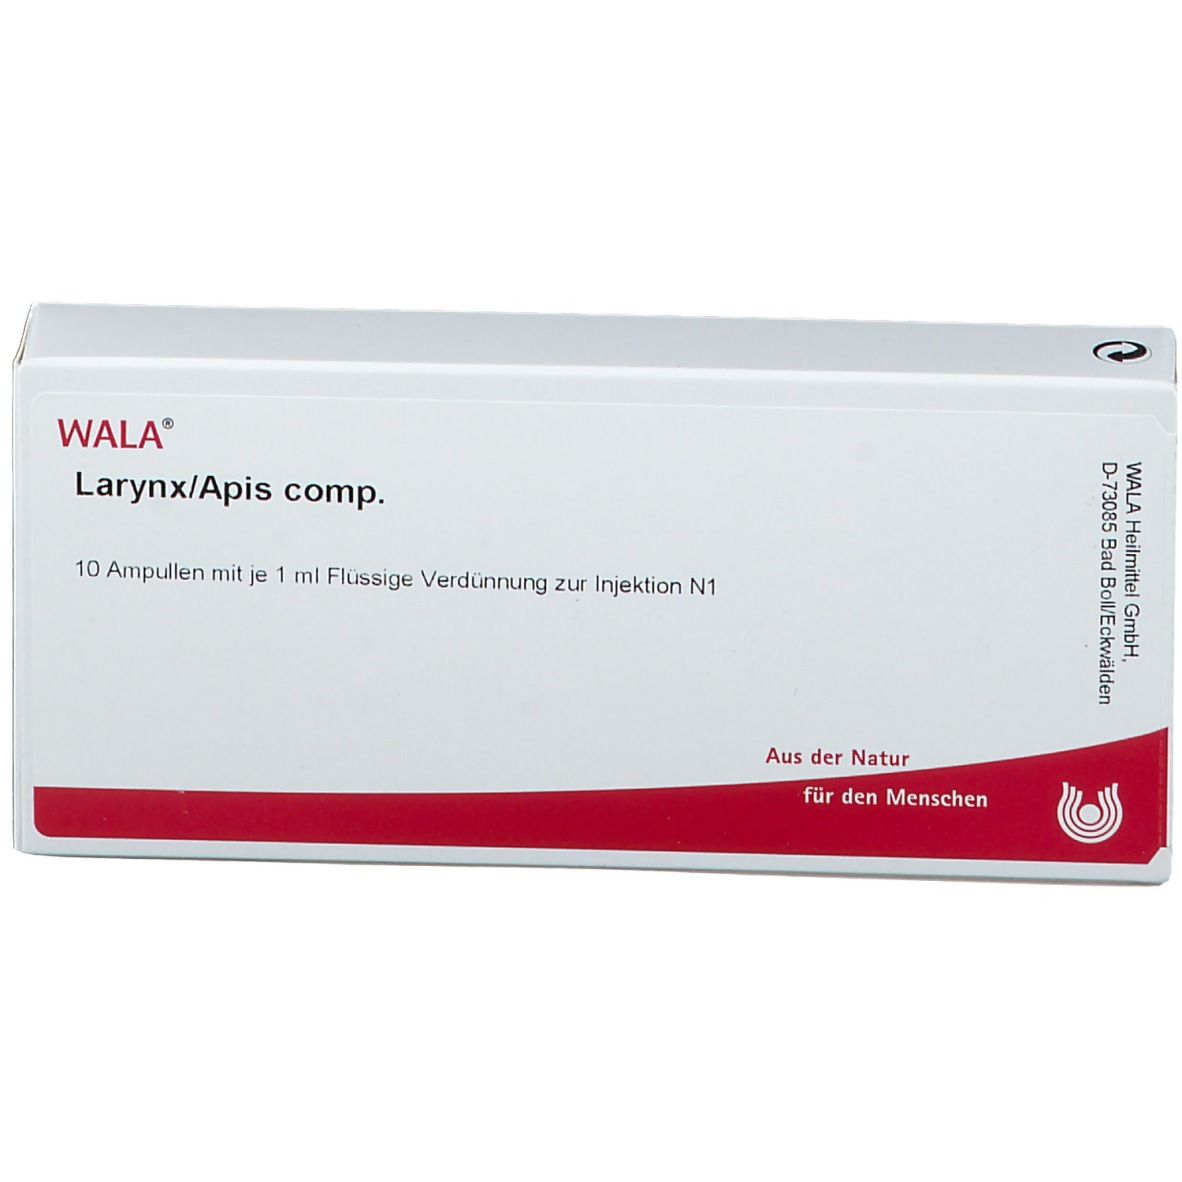 WALA® Larynx/Apis comp.